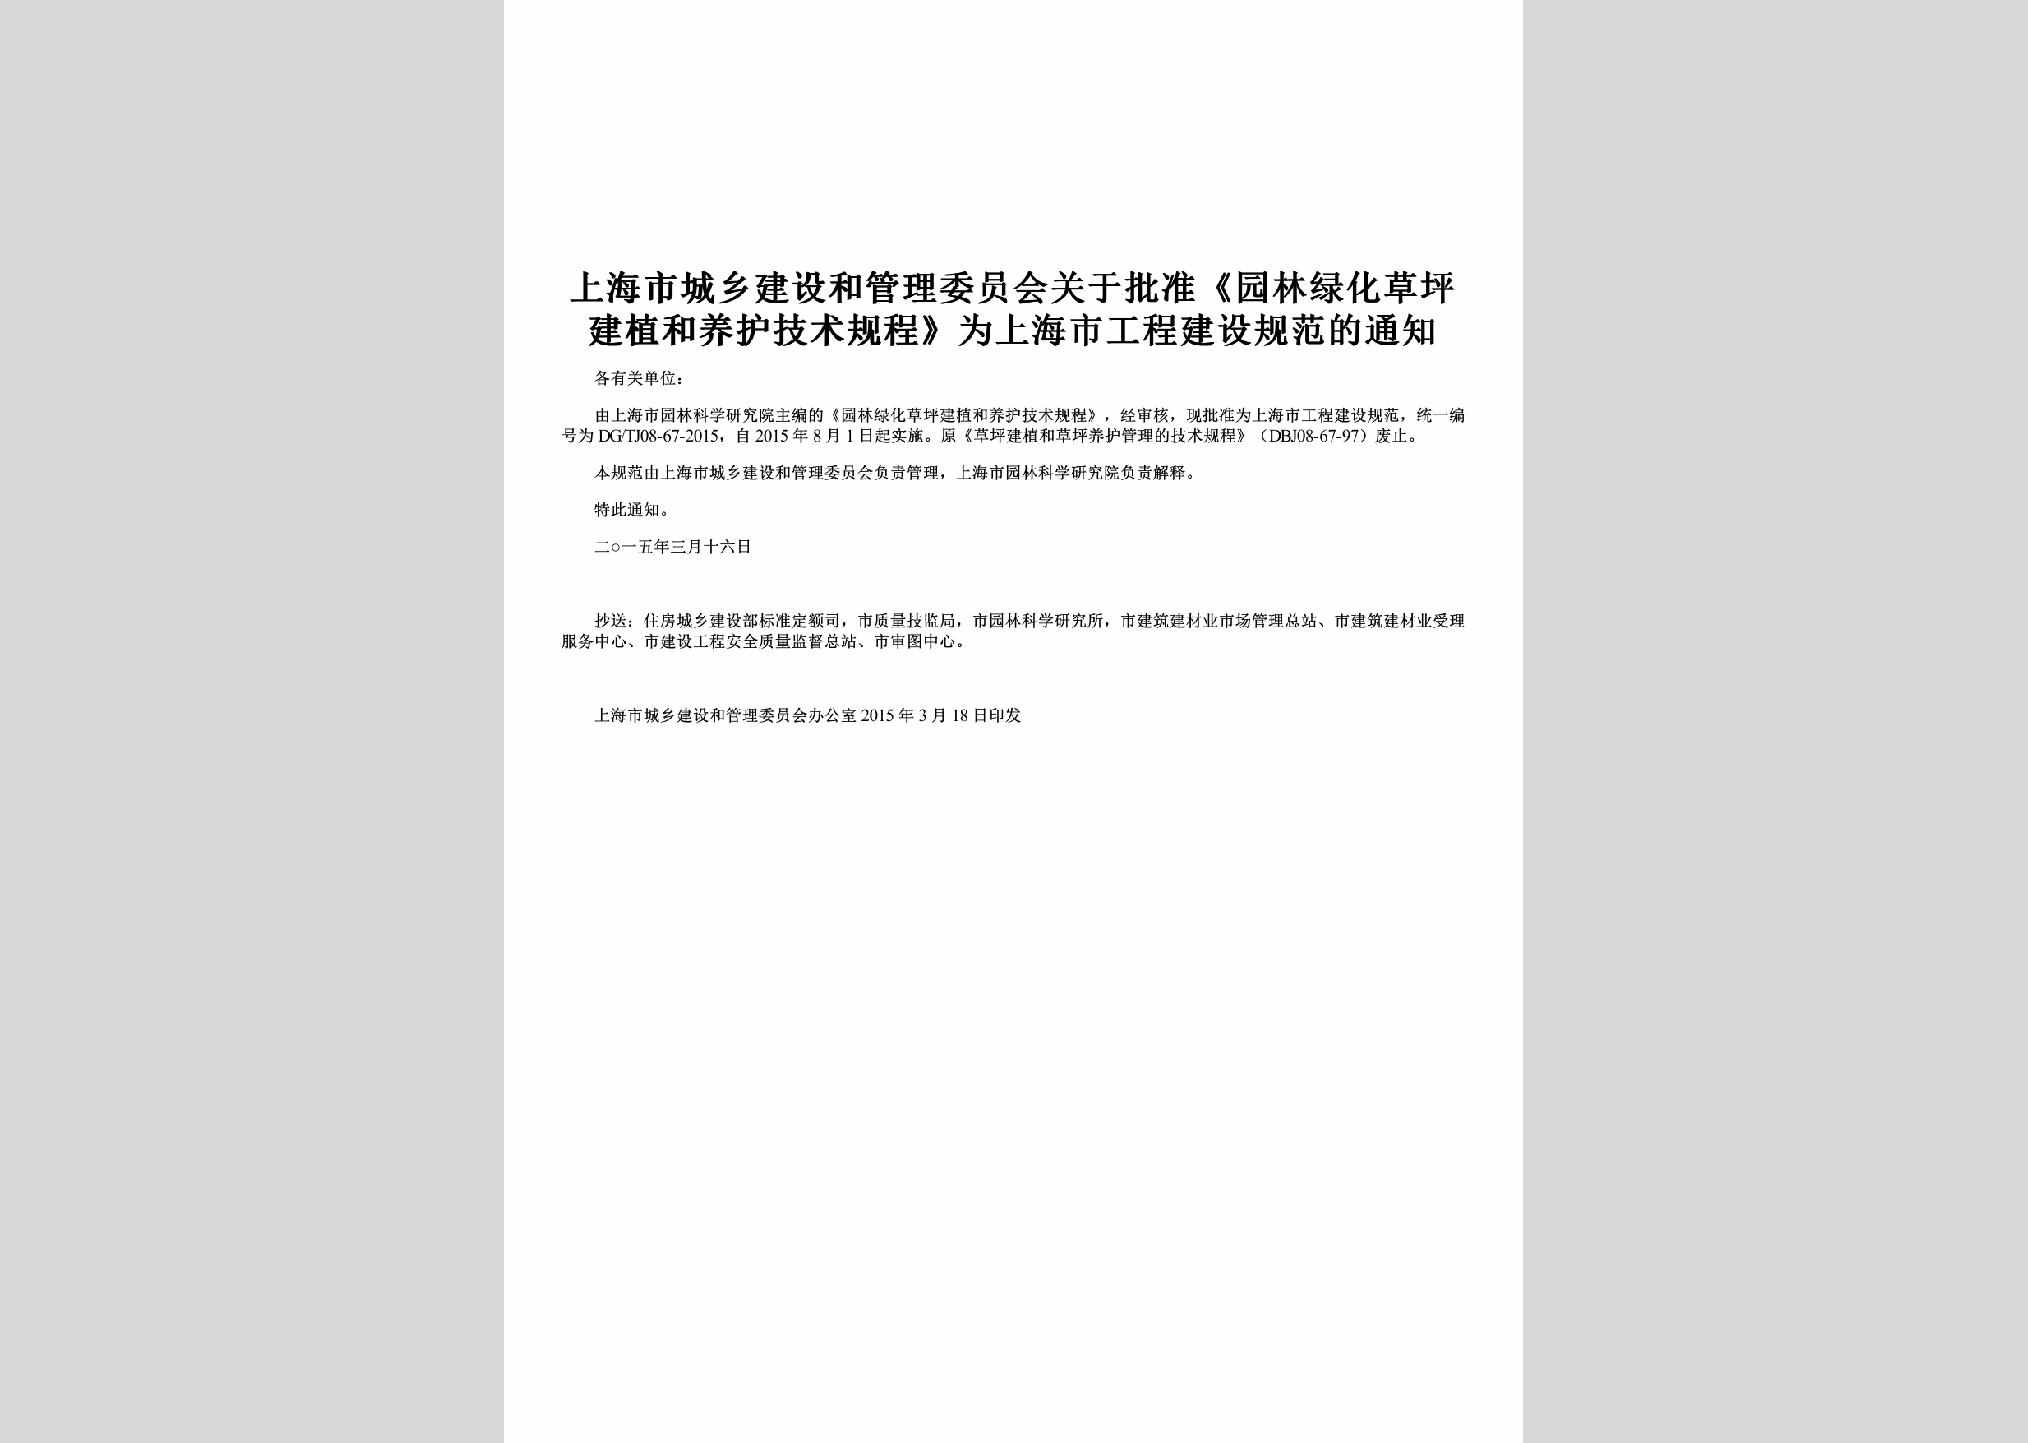 SH-YLLHGCTZ-2015：关于批准《园林绿化草坪建植和养护技术规程》为上海市工程建设规范的通知